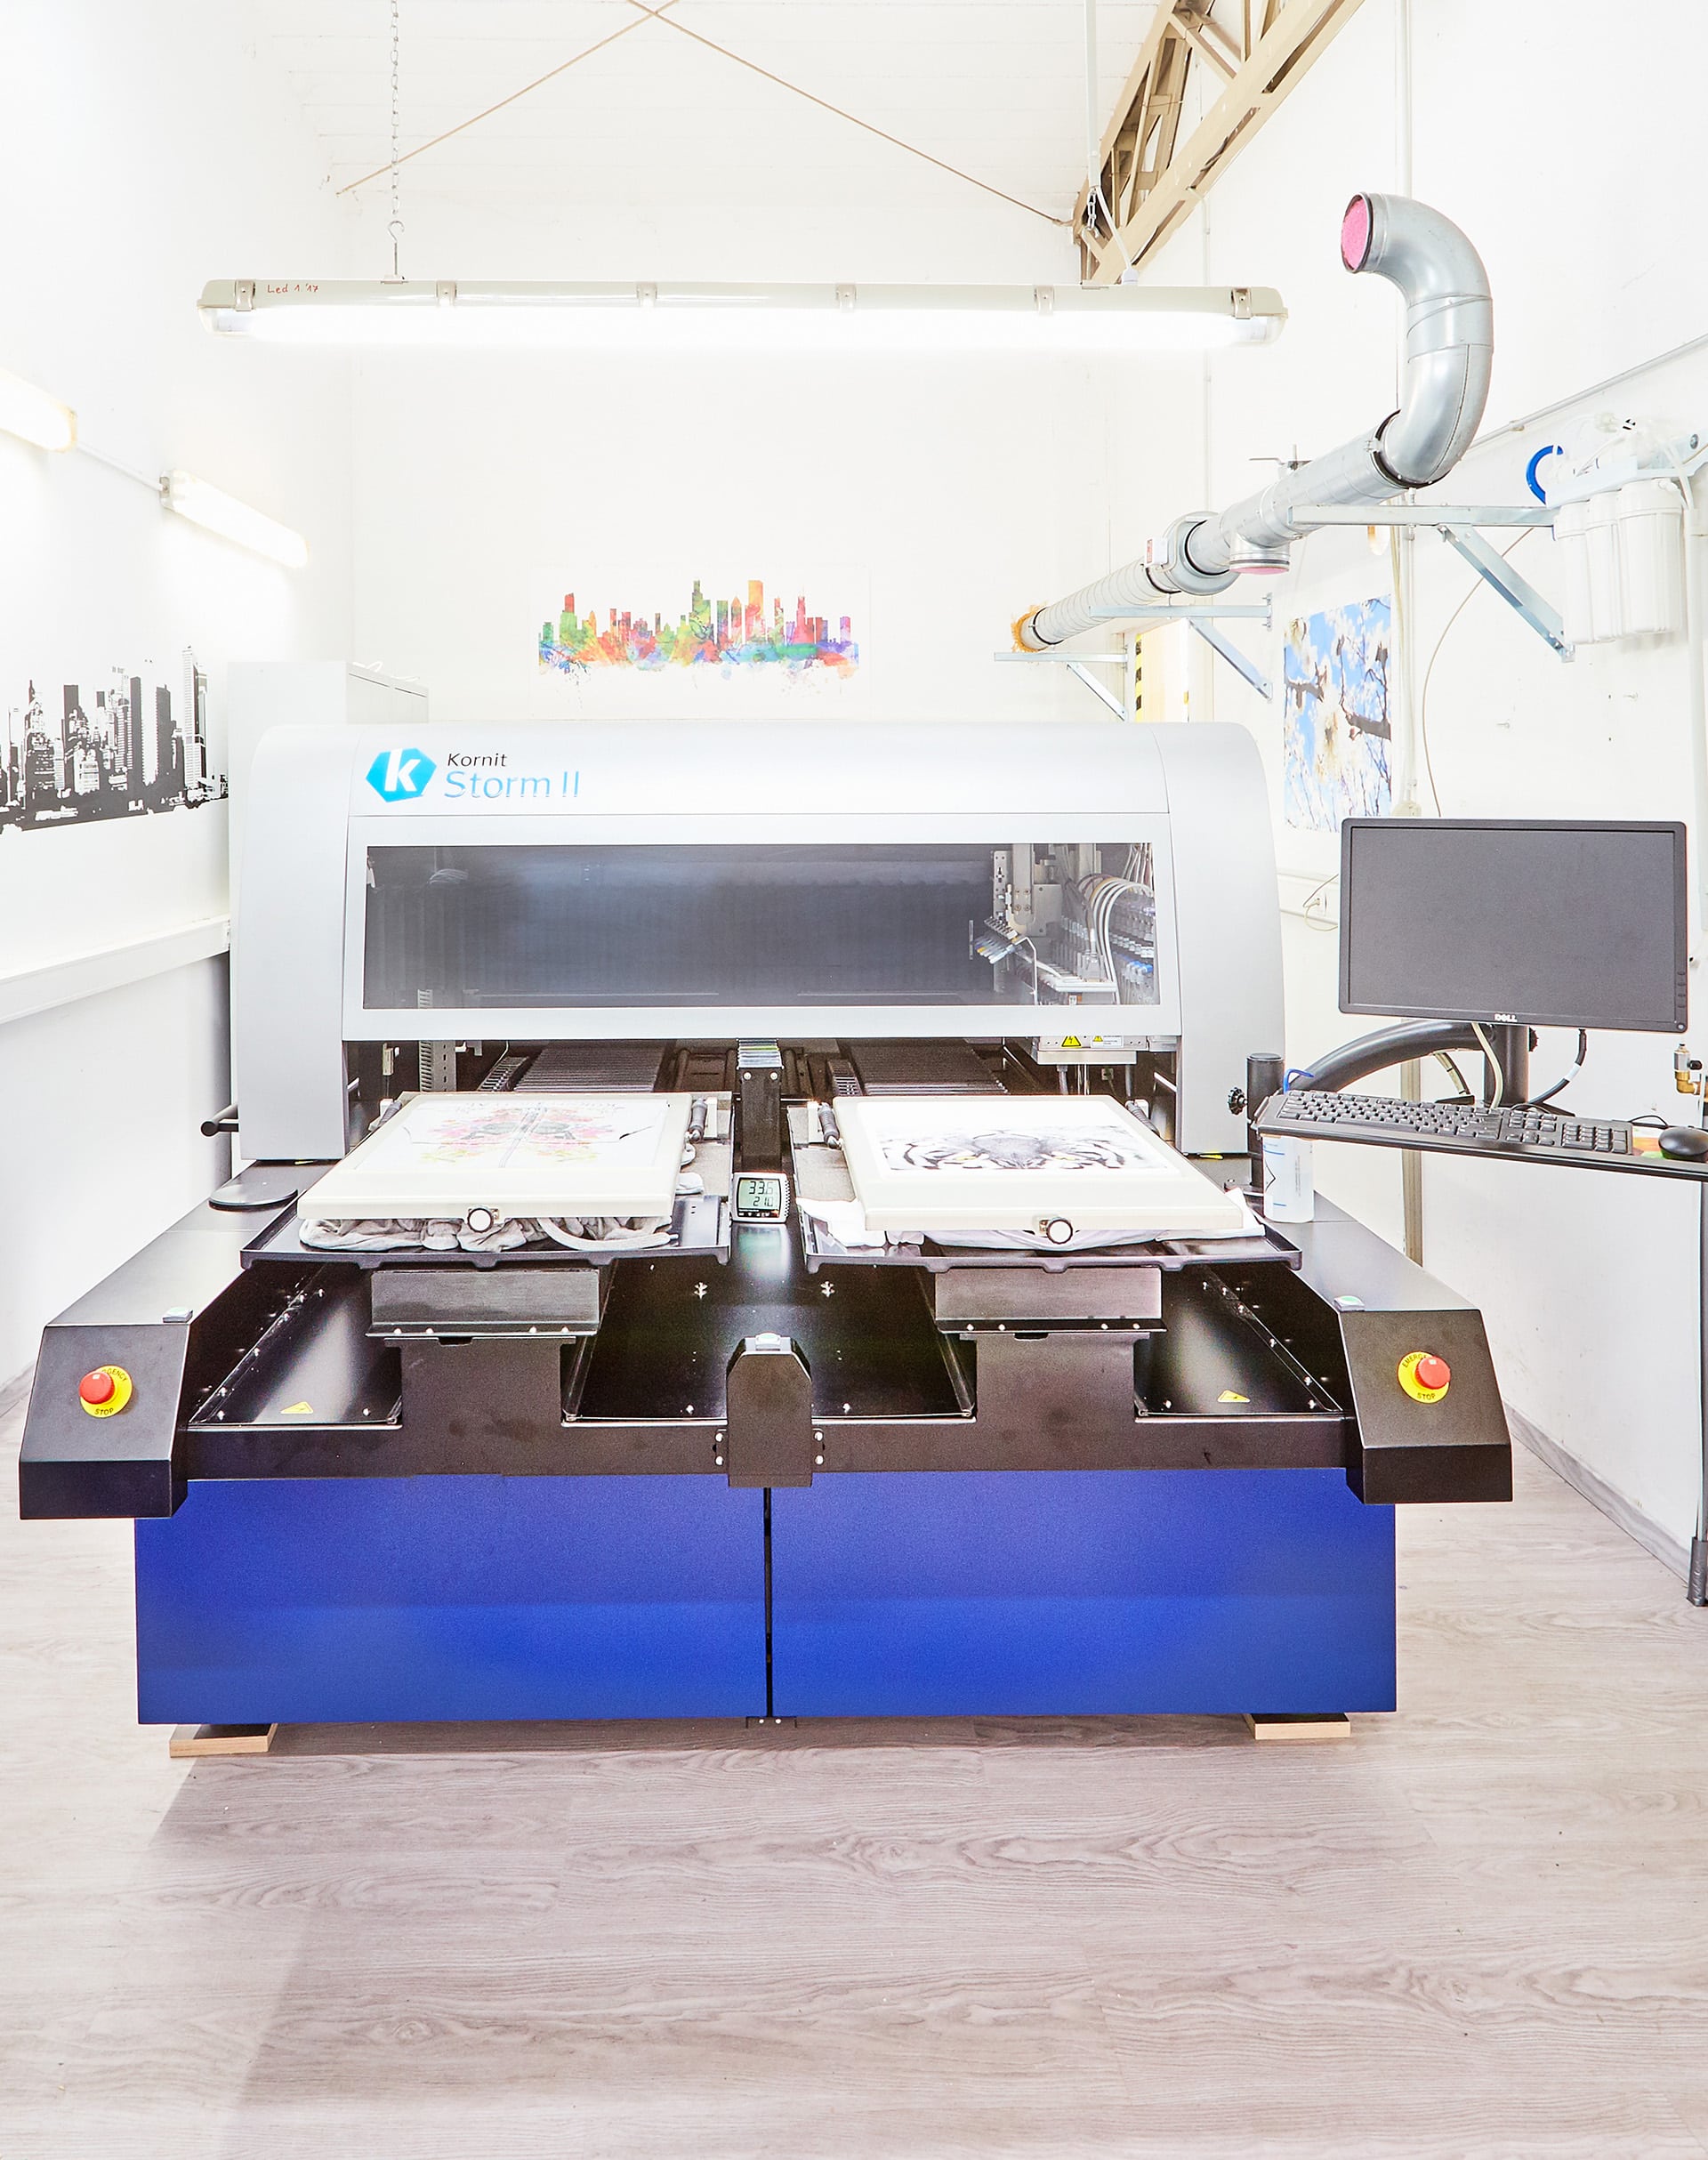 Digital-Direktdrucker aus der Produktion.